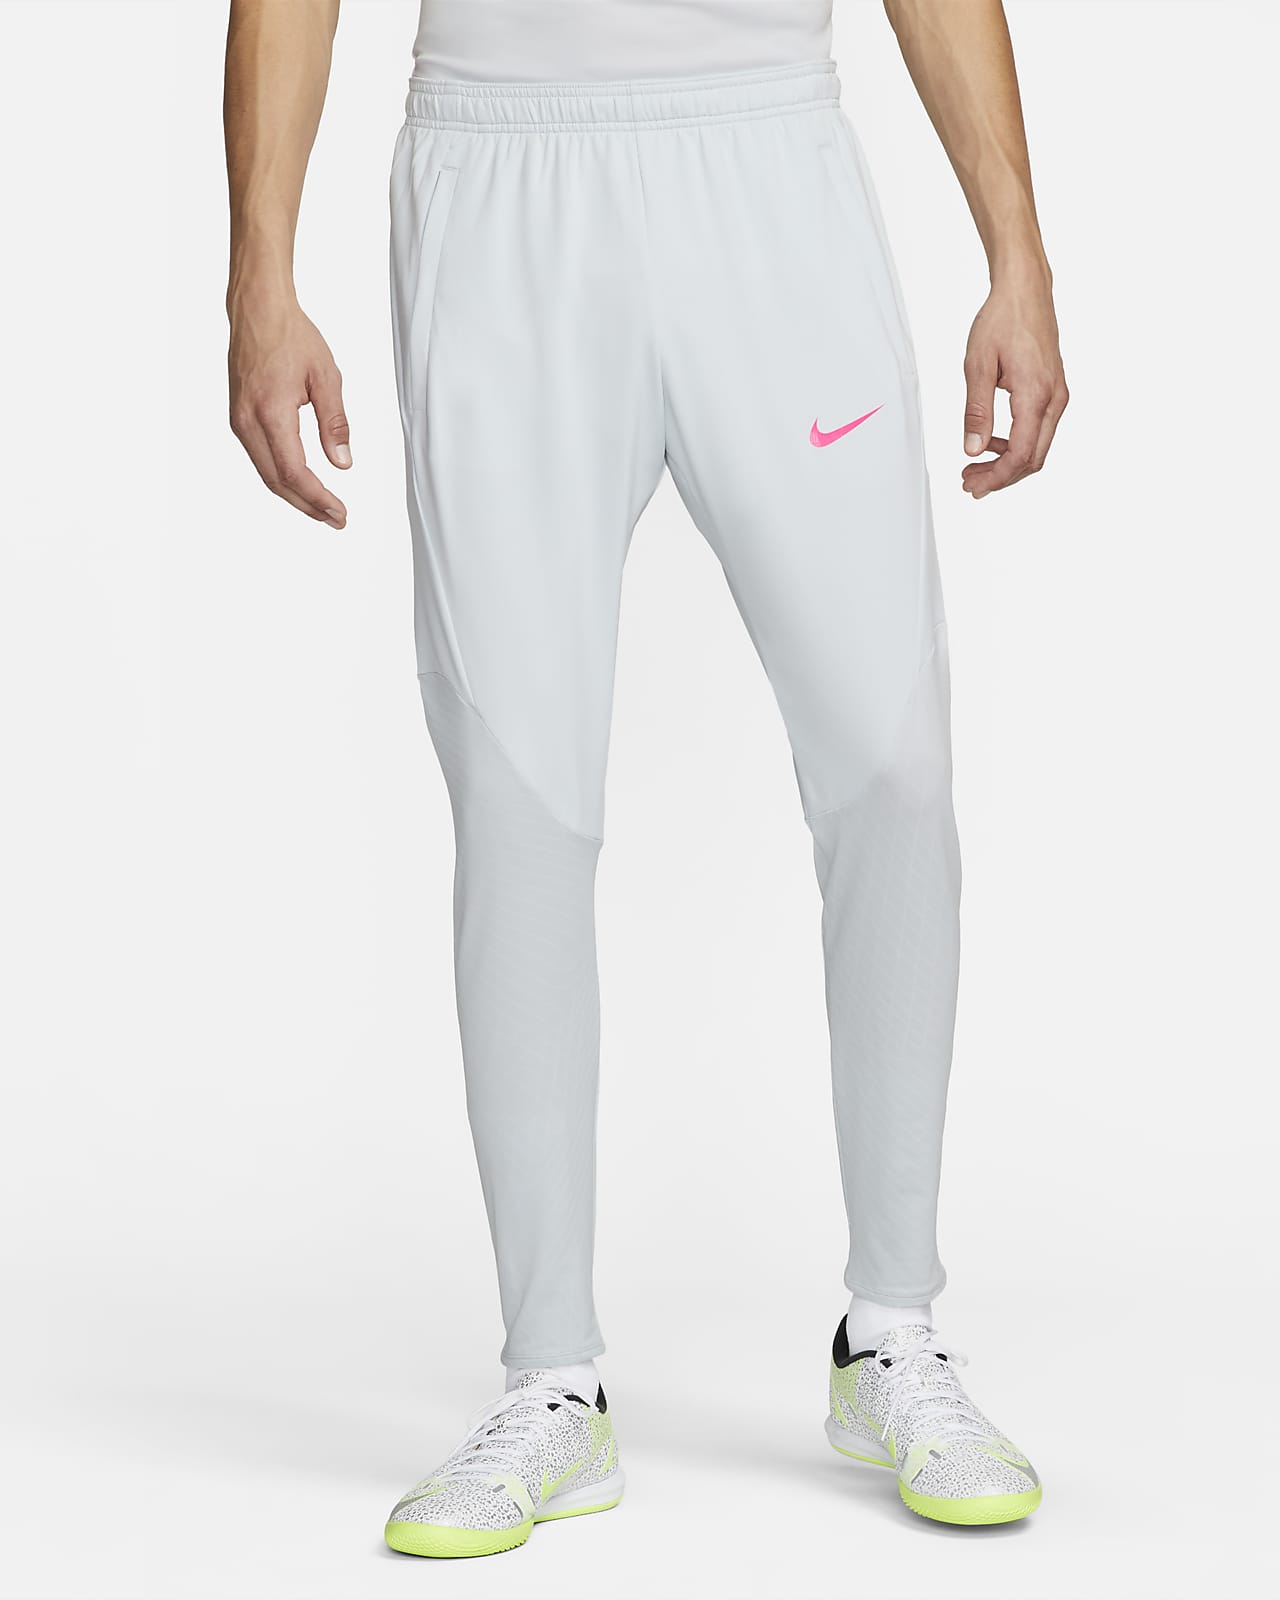 comunidad presidente Calumnia Pants de fútbol para hombre Nike Dri-FIT Strike. Nike.com